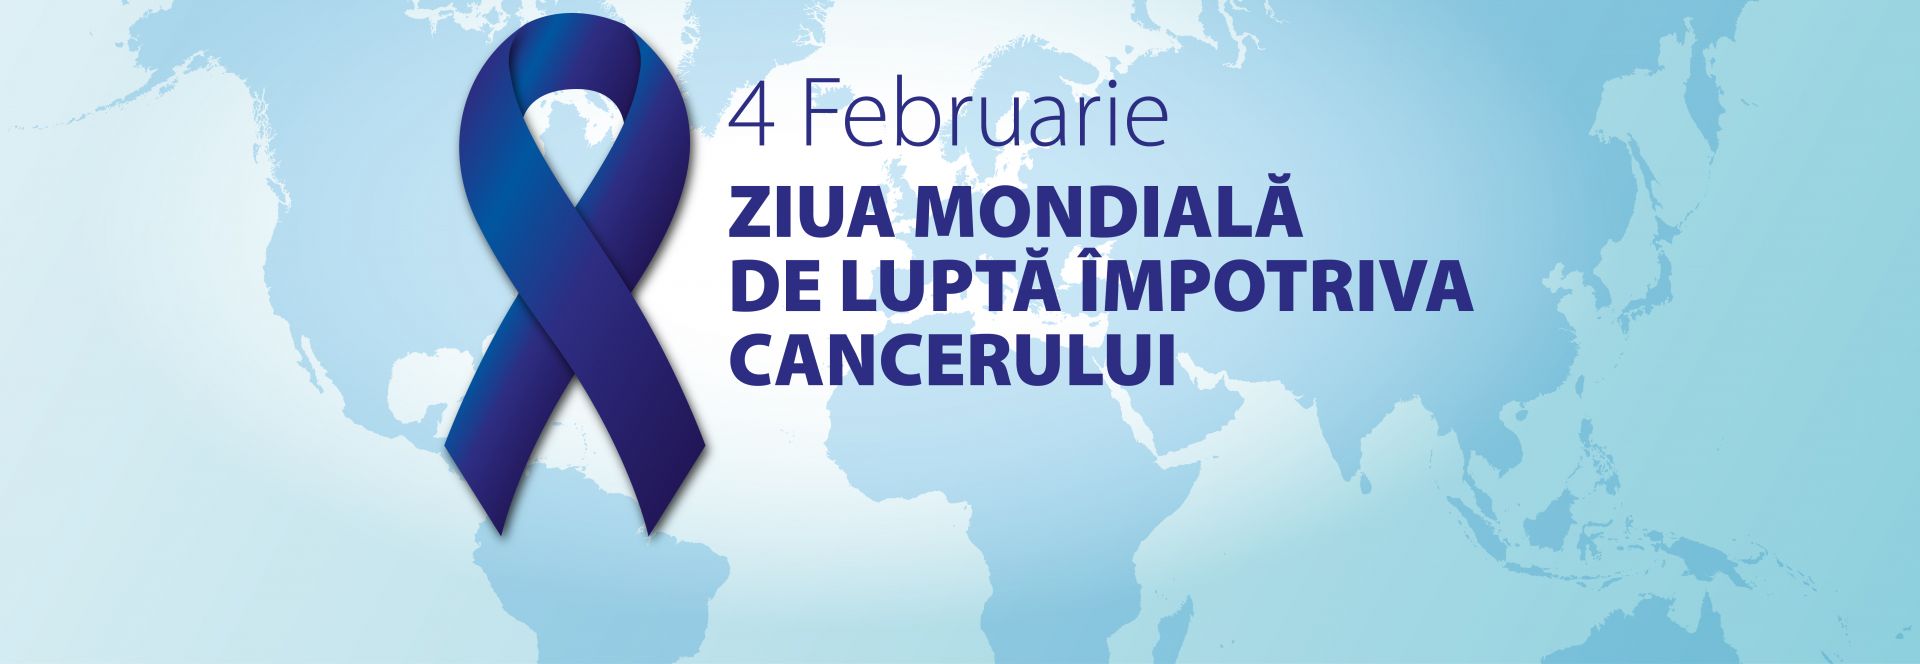 4 februarie - Ziua Mondială de Luptă Împotriva Cancerului 